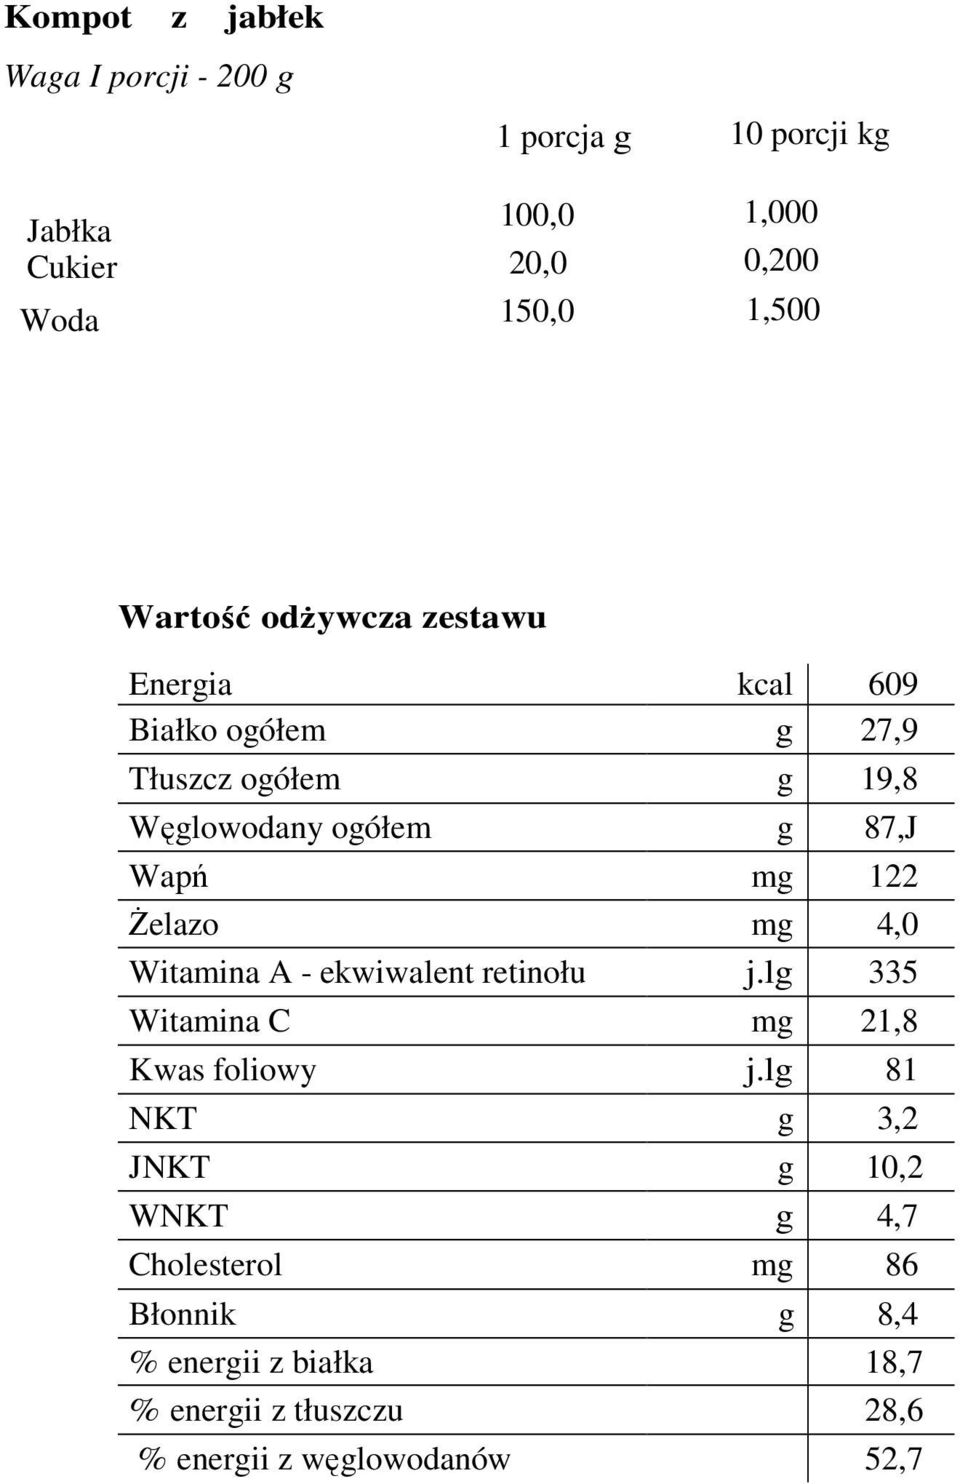 122 śelazo mg 4,0 Witamina A - ekwiwalent retinołu j.lg 335 Witamina C mg 21,8 Kwas foliowy j.